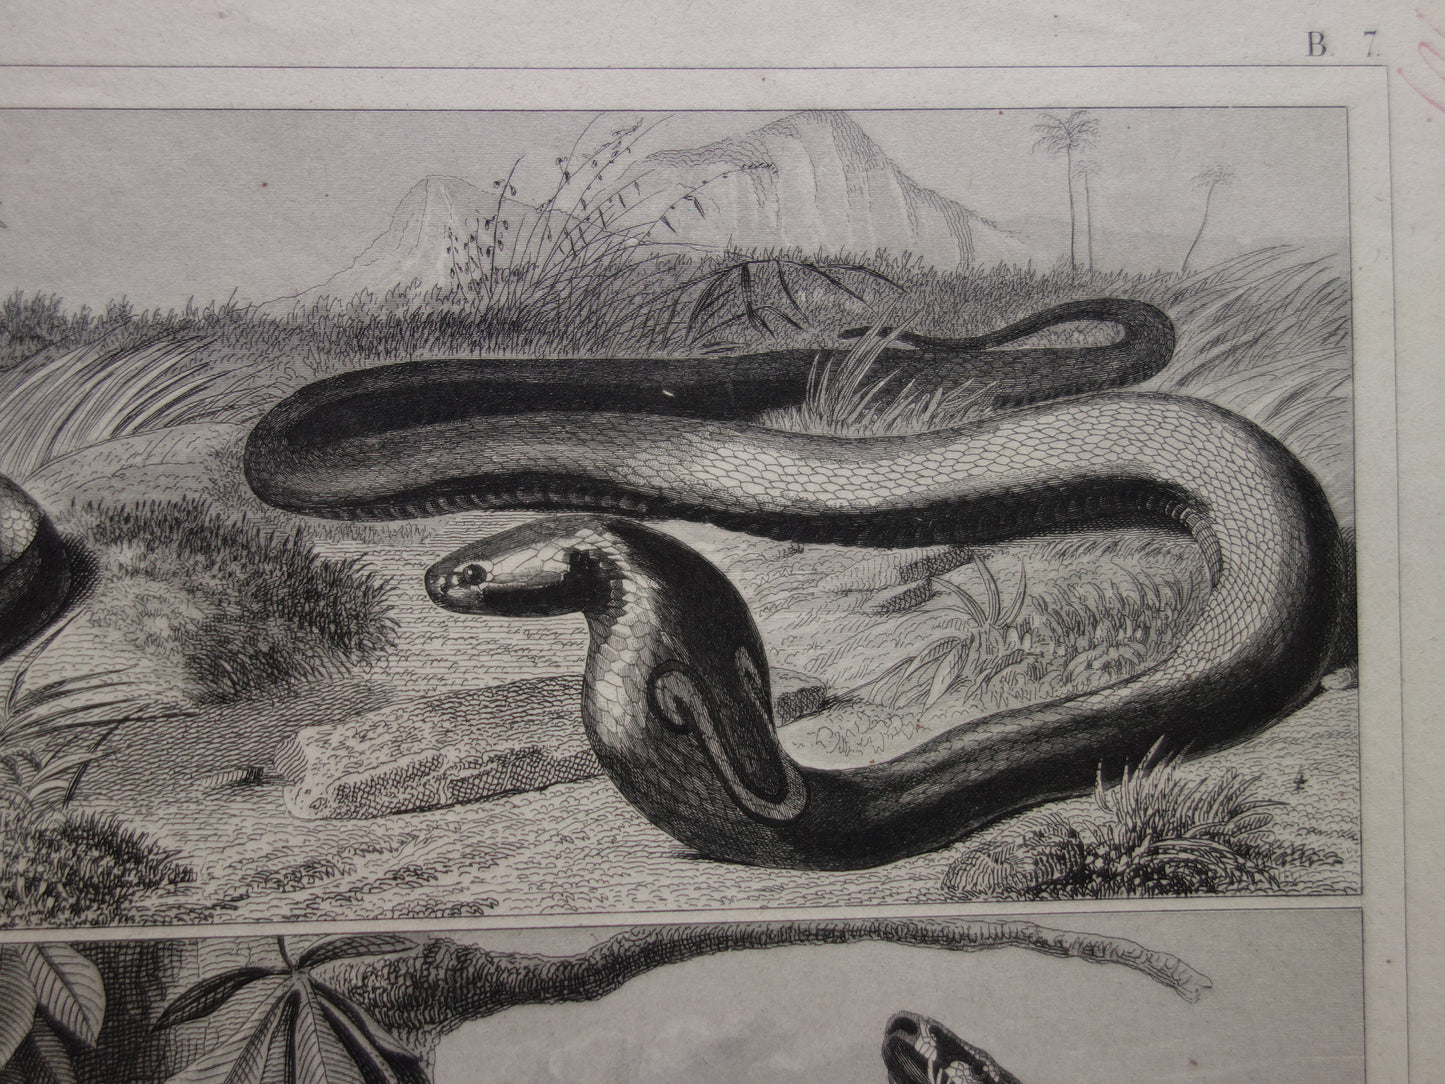 SLANGEN Set van twee oude prenten over de slang uit 1849 - originele antieke prints Cobra Adder Boa vintage illustratie